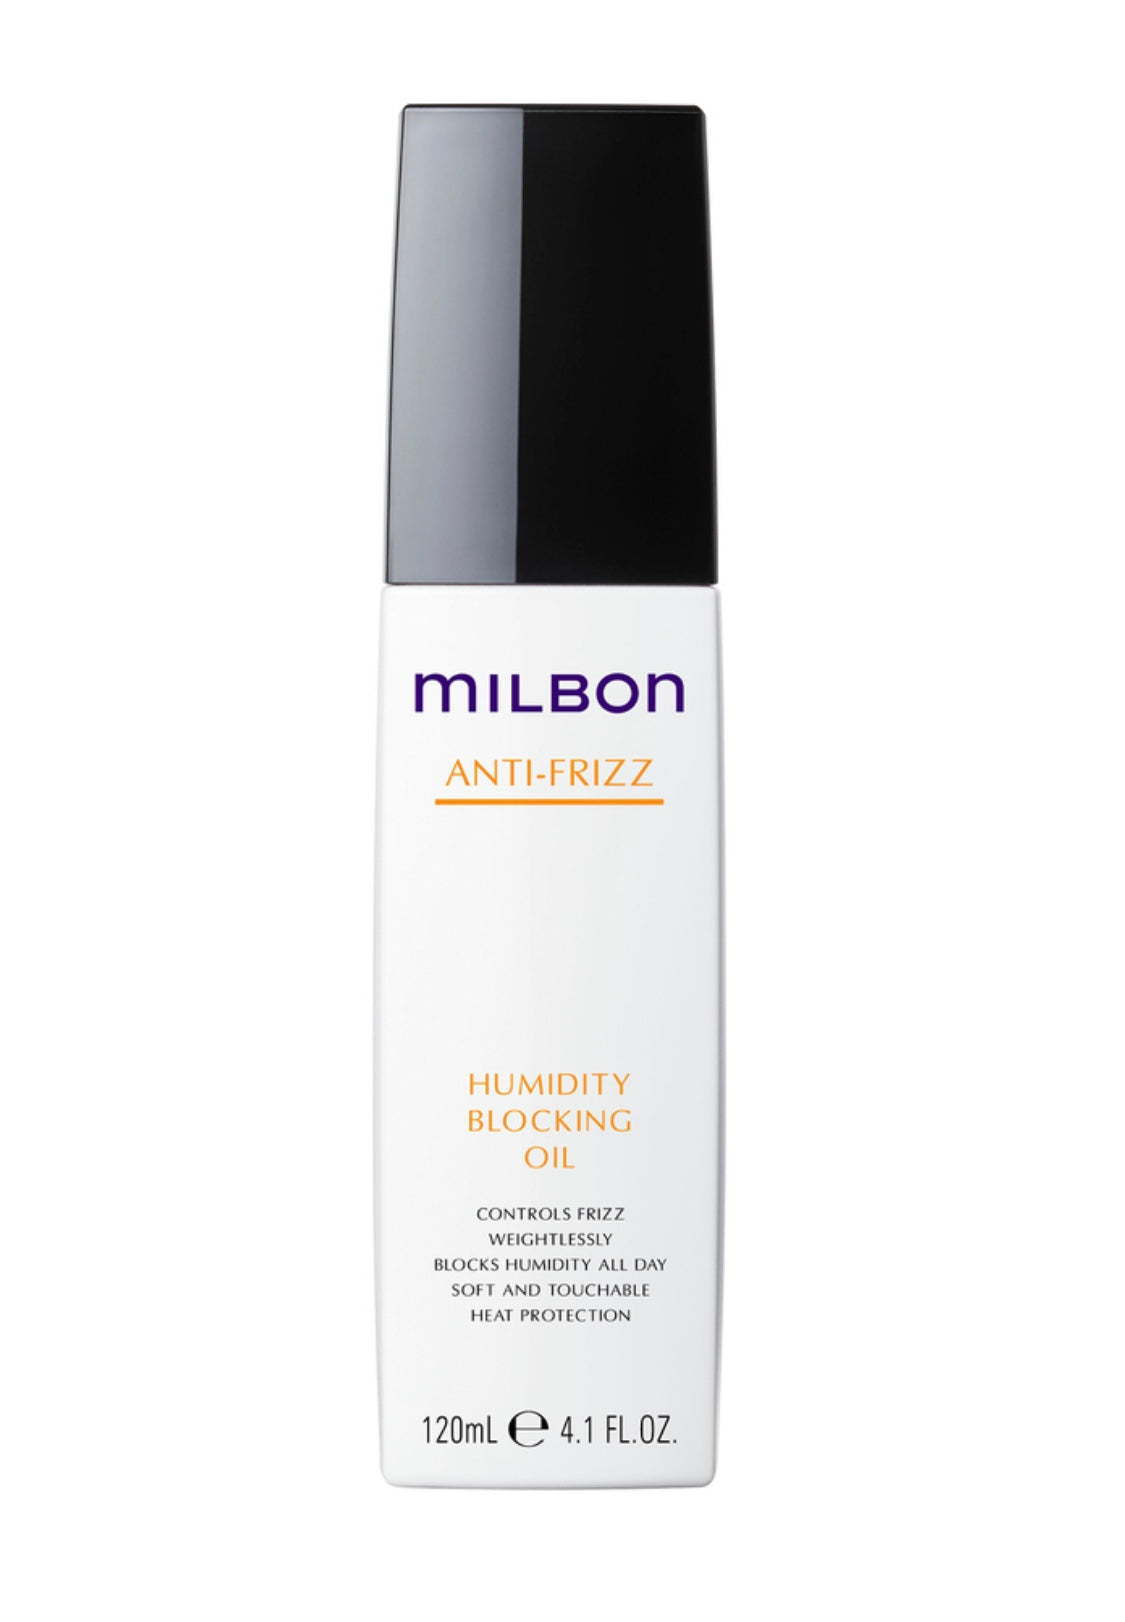 Milbon - Anti-frizz Humidity blocking oil 4.1 fl. oz. / 120 ml